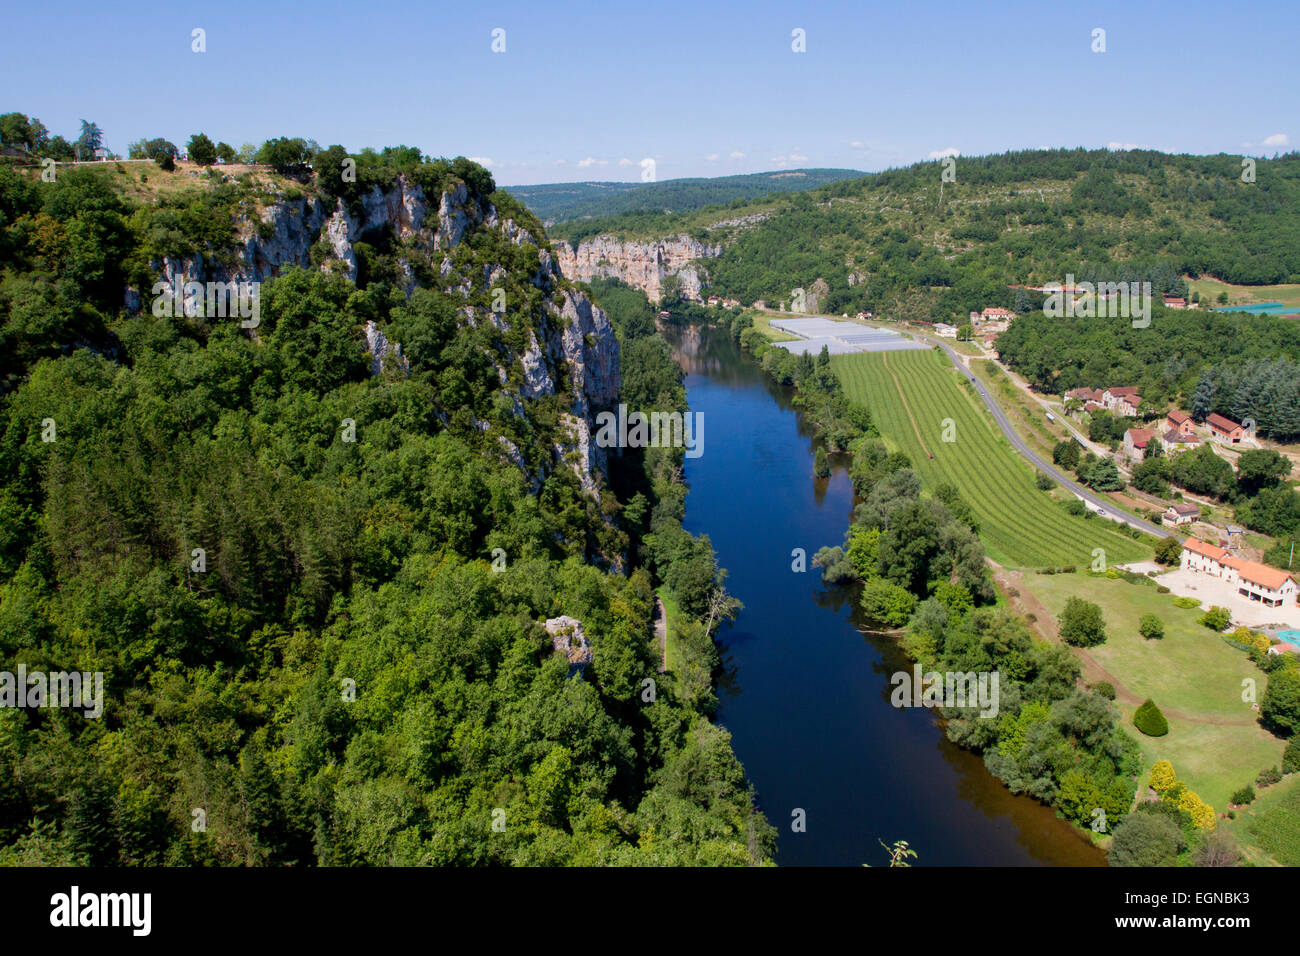 La rivière Lot et campagne environnante de village médiéval de Saint-Cirq-Lapopie, département du Lot, au sud-ouest de la France en août Banque D'Images